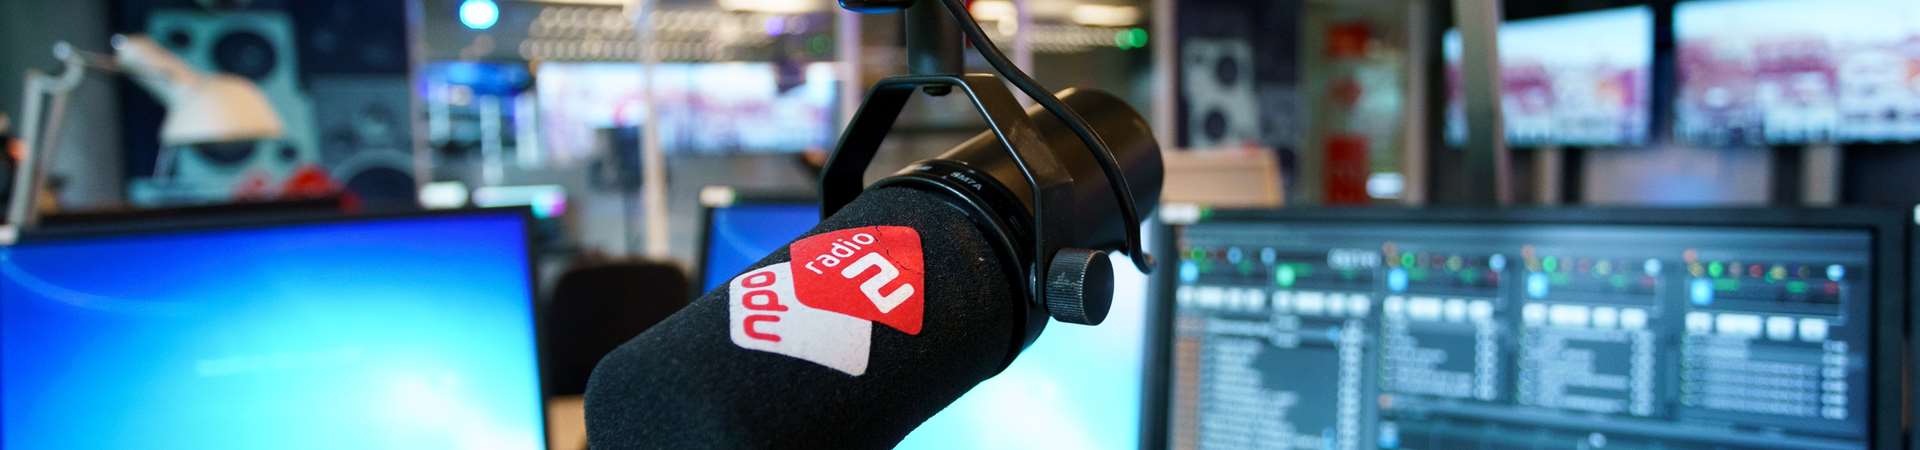 NPO Radio 2 Adverteren